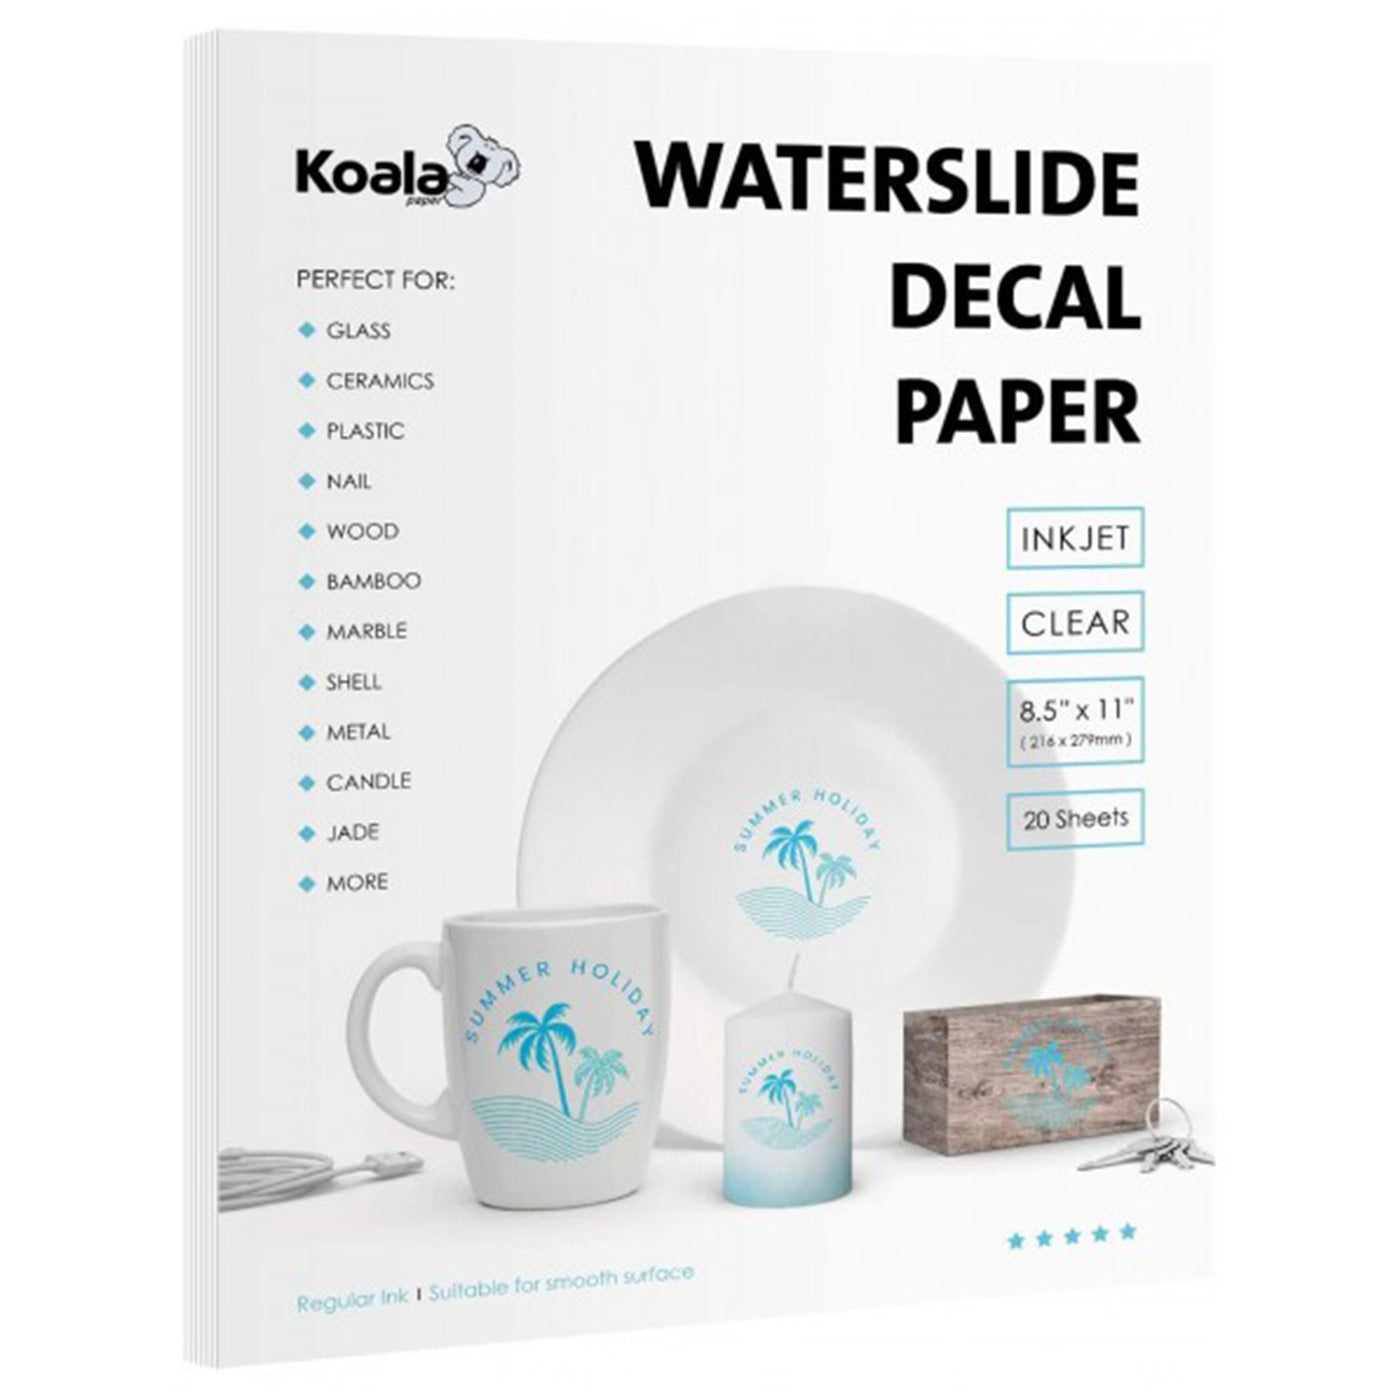 Koala Clear Waterslide Decal for Inkjet Printer 8.5" x 11" 20 Sheets